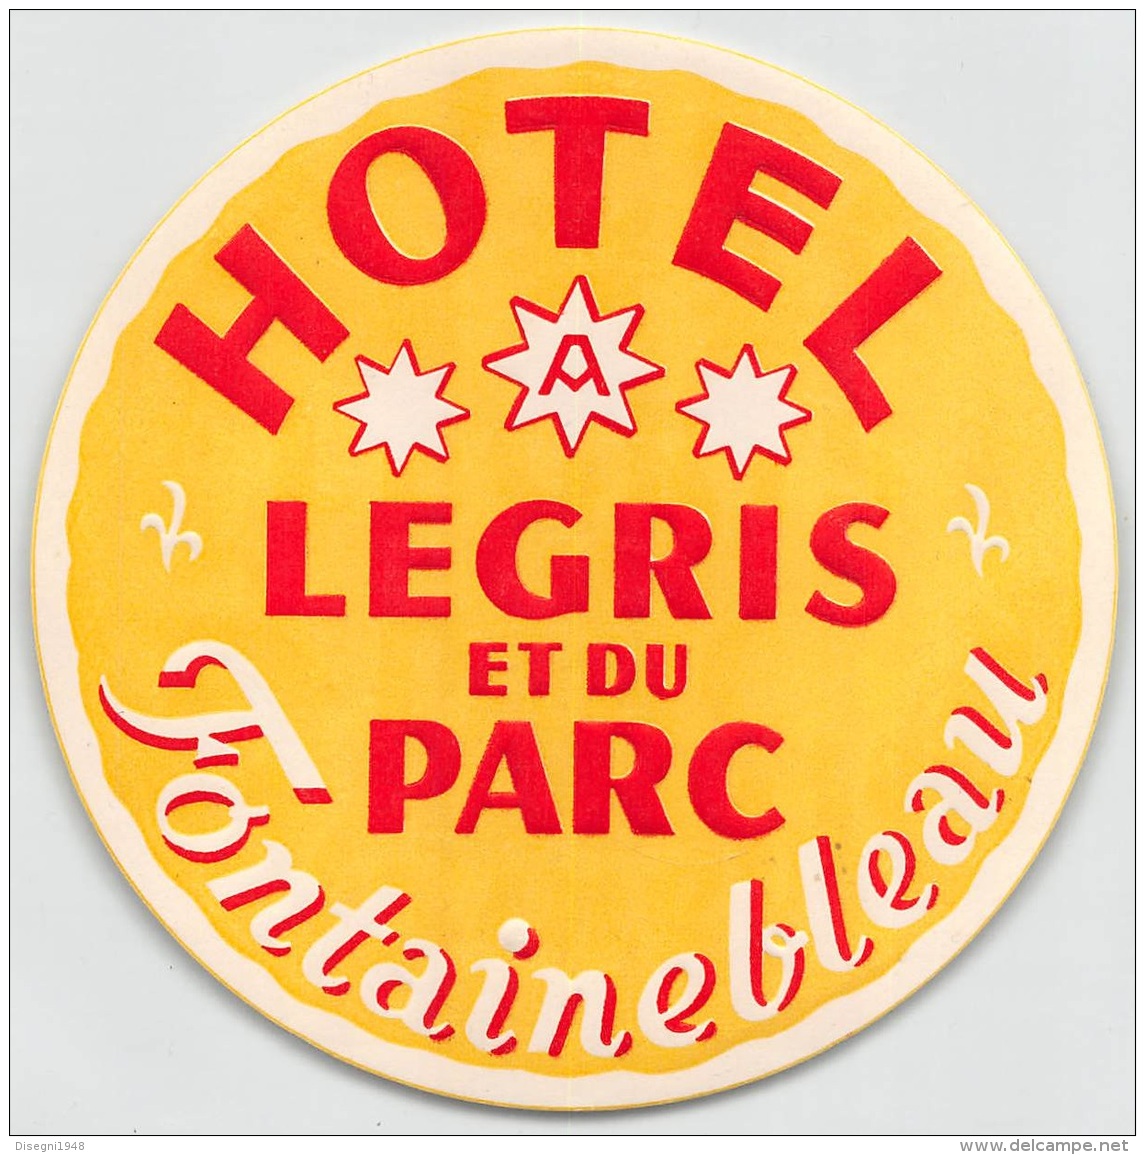 05809 "FRANCIA - FONTAINENBLEAU - HOTEL LEGRIS ET DU PARC" ETICHETTA ORIGINALE - Etiquettes D'hotels